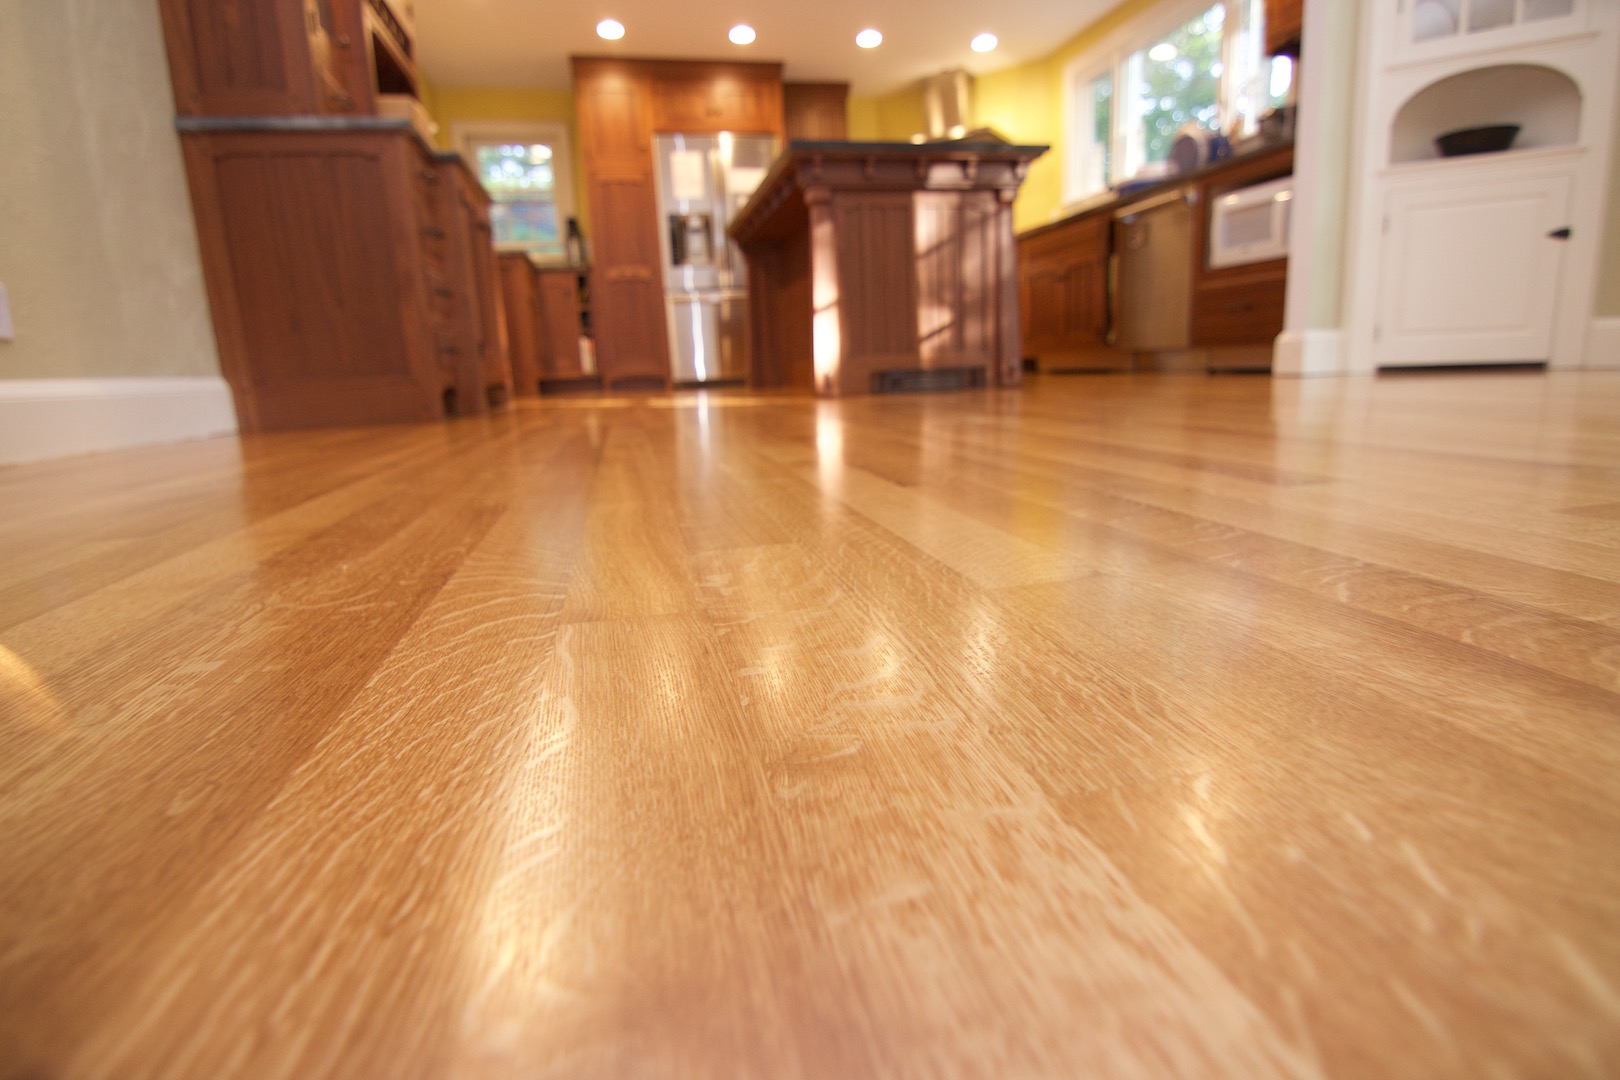 Polyurethane Wood Floor Finish How To, Polyurethane Bubbles On Hardwood Floors